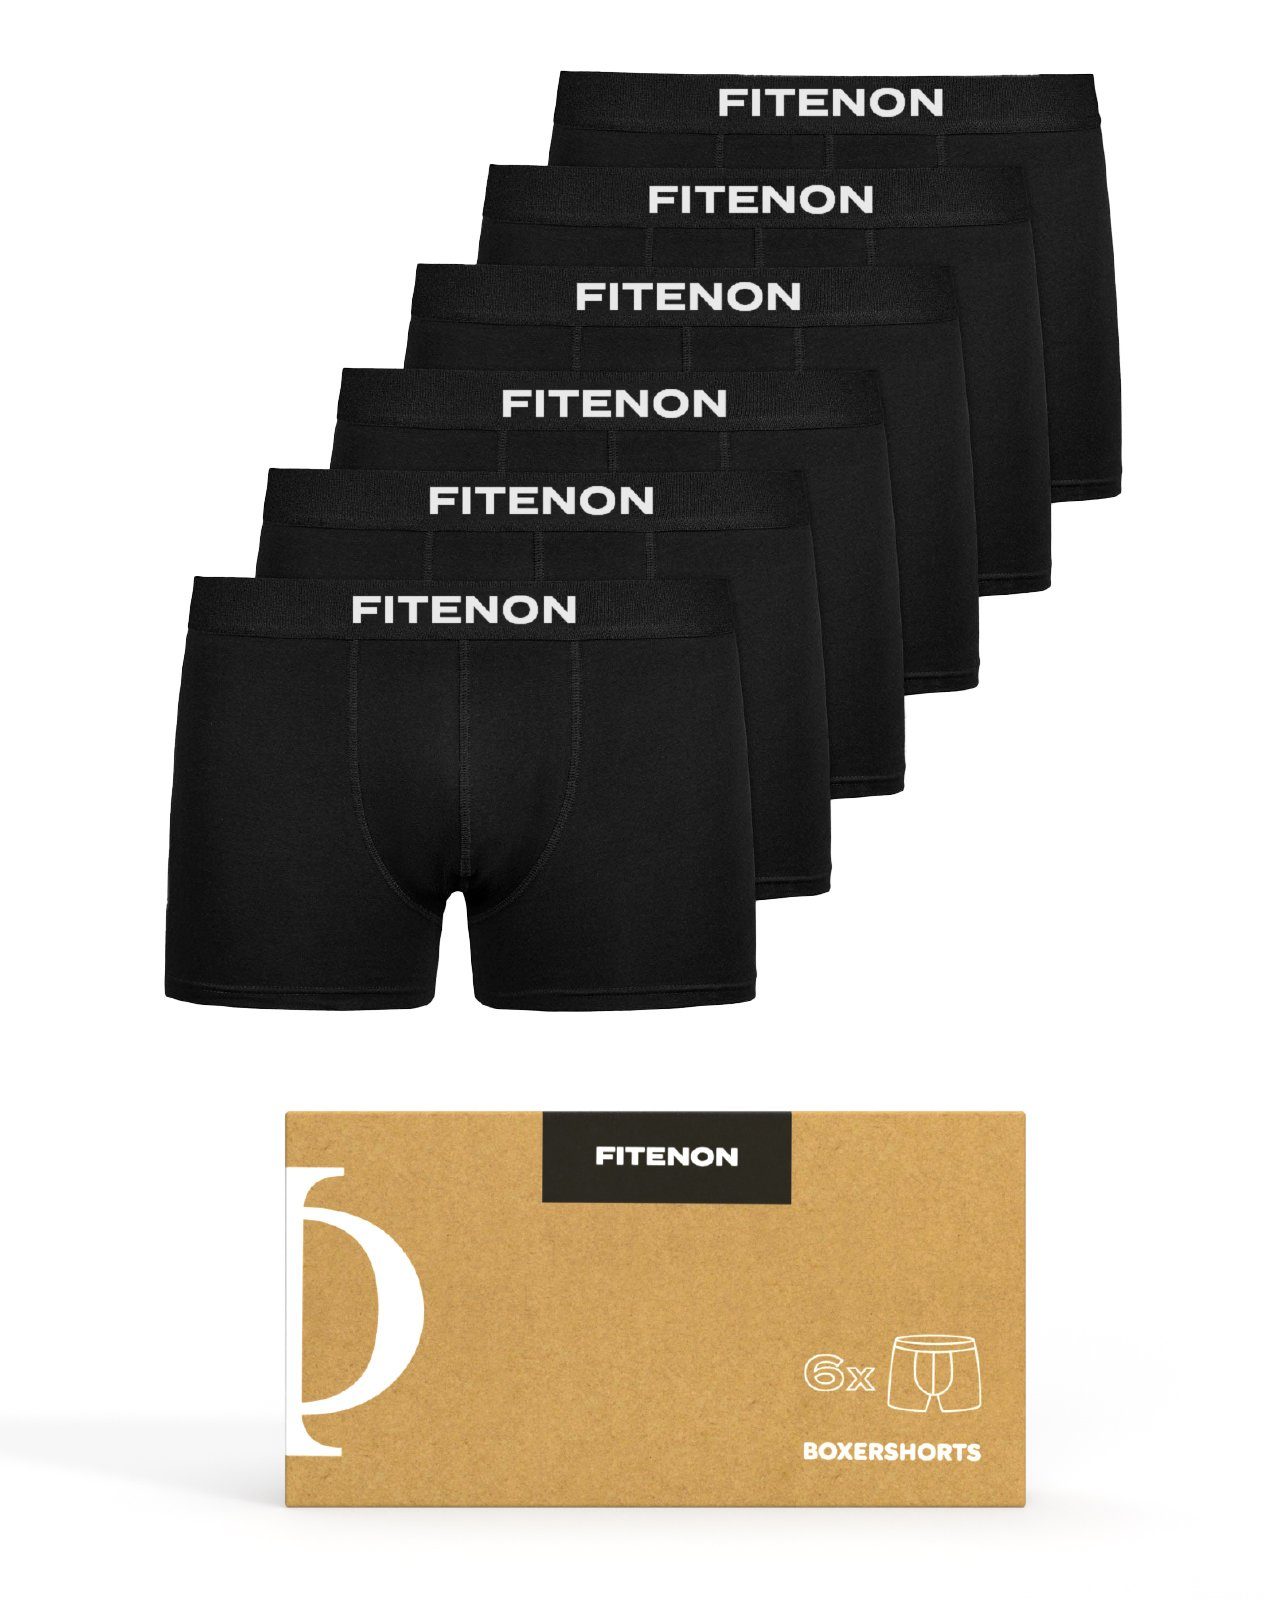 FITENON Boxershorts Herren Unterhosen, Unterwäsche, ohne kratzenden Zettel, Baumwolle (6 er Set) mit Logo-Elastikbund 6x Schwarz